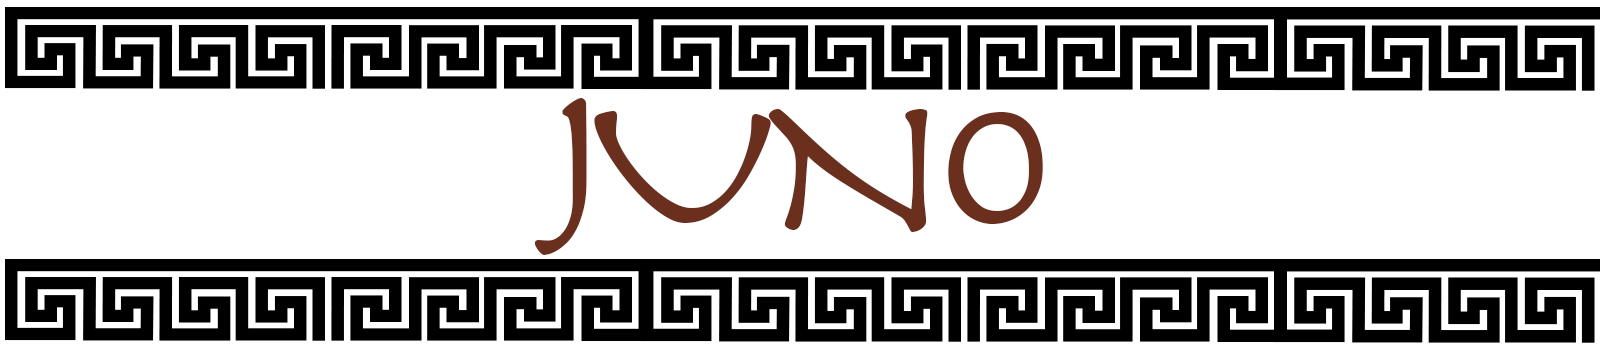 Juno Header